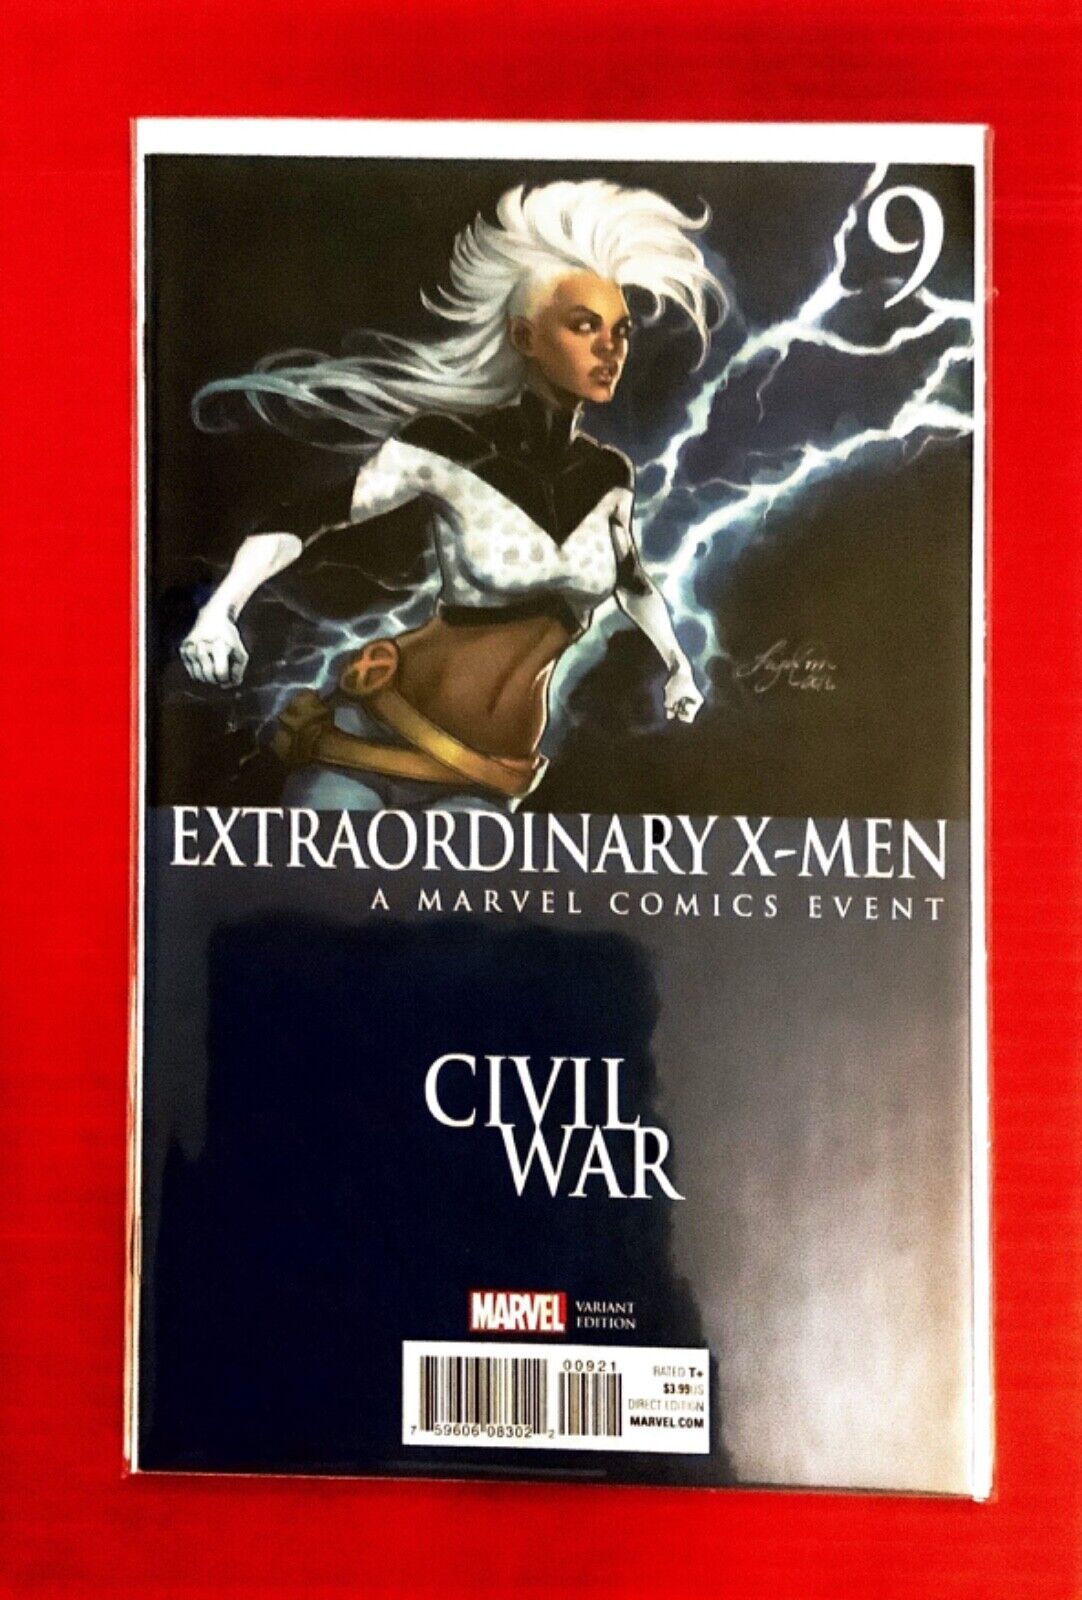 EXTRAORDINARY X-MEN #9 VARIANT COVER NEAR MINT BUY TODAY AT RAINBOW COMICS